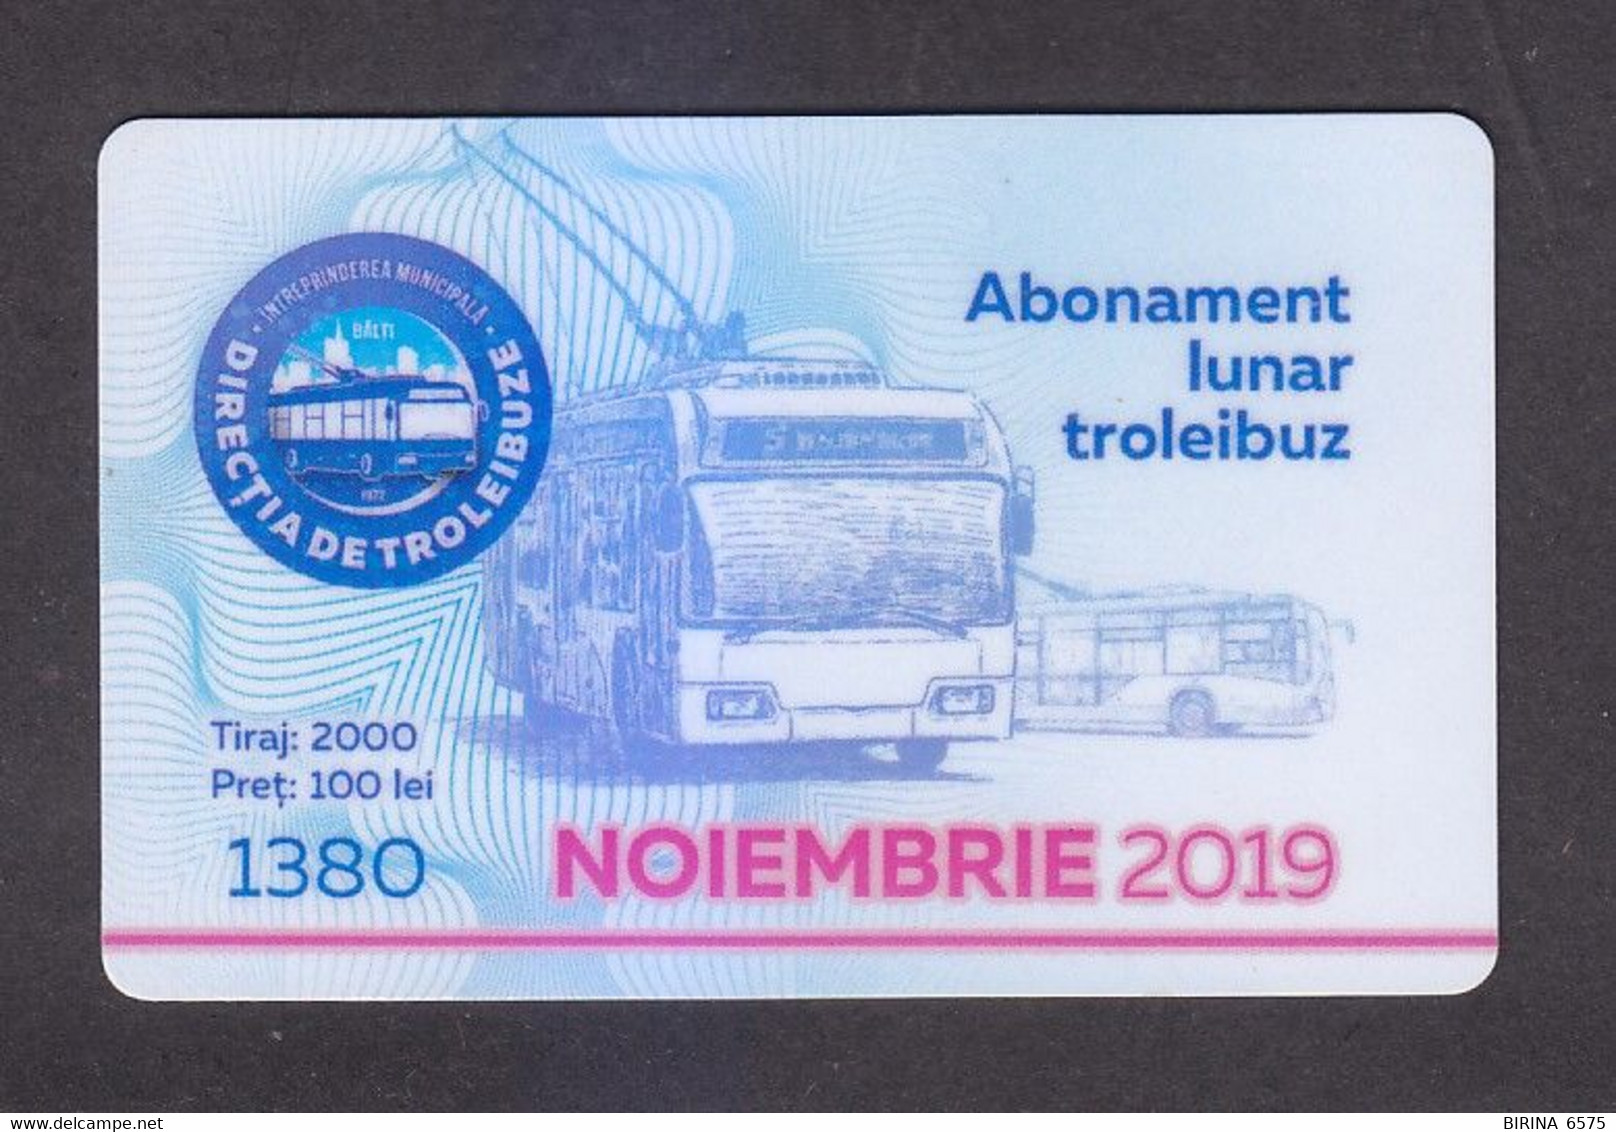 TRANSPORT CARD OF MOLDOVA. - 1-20 - Moldavië